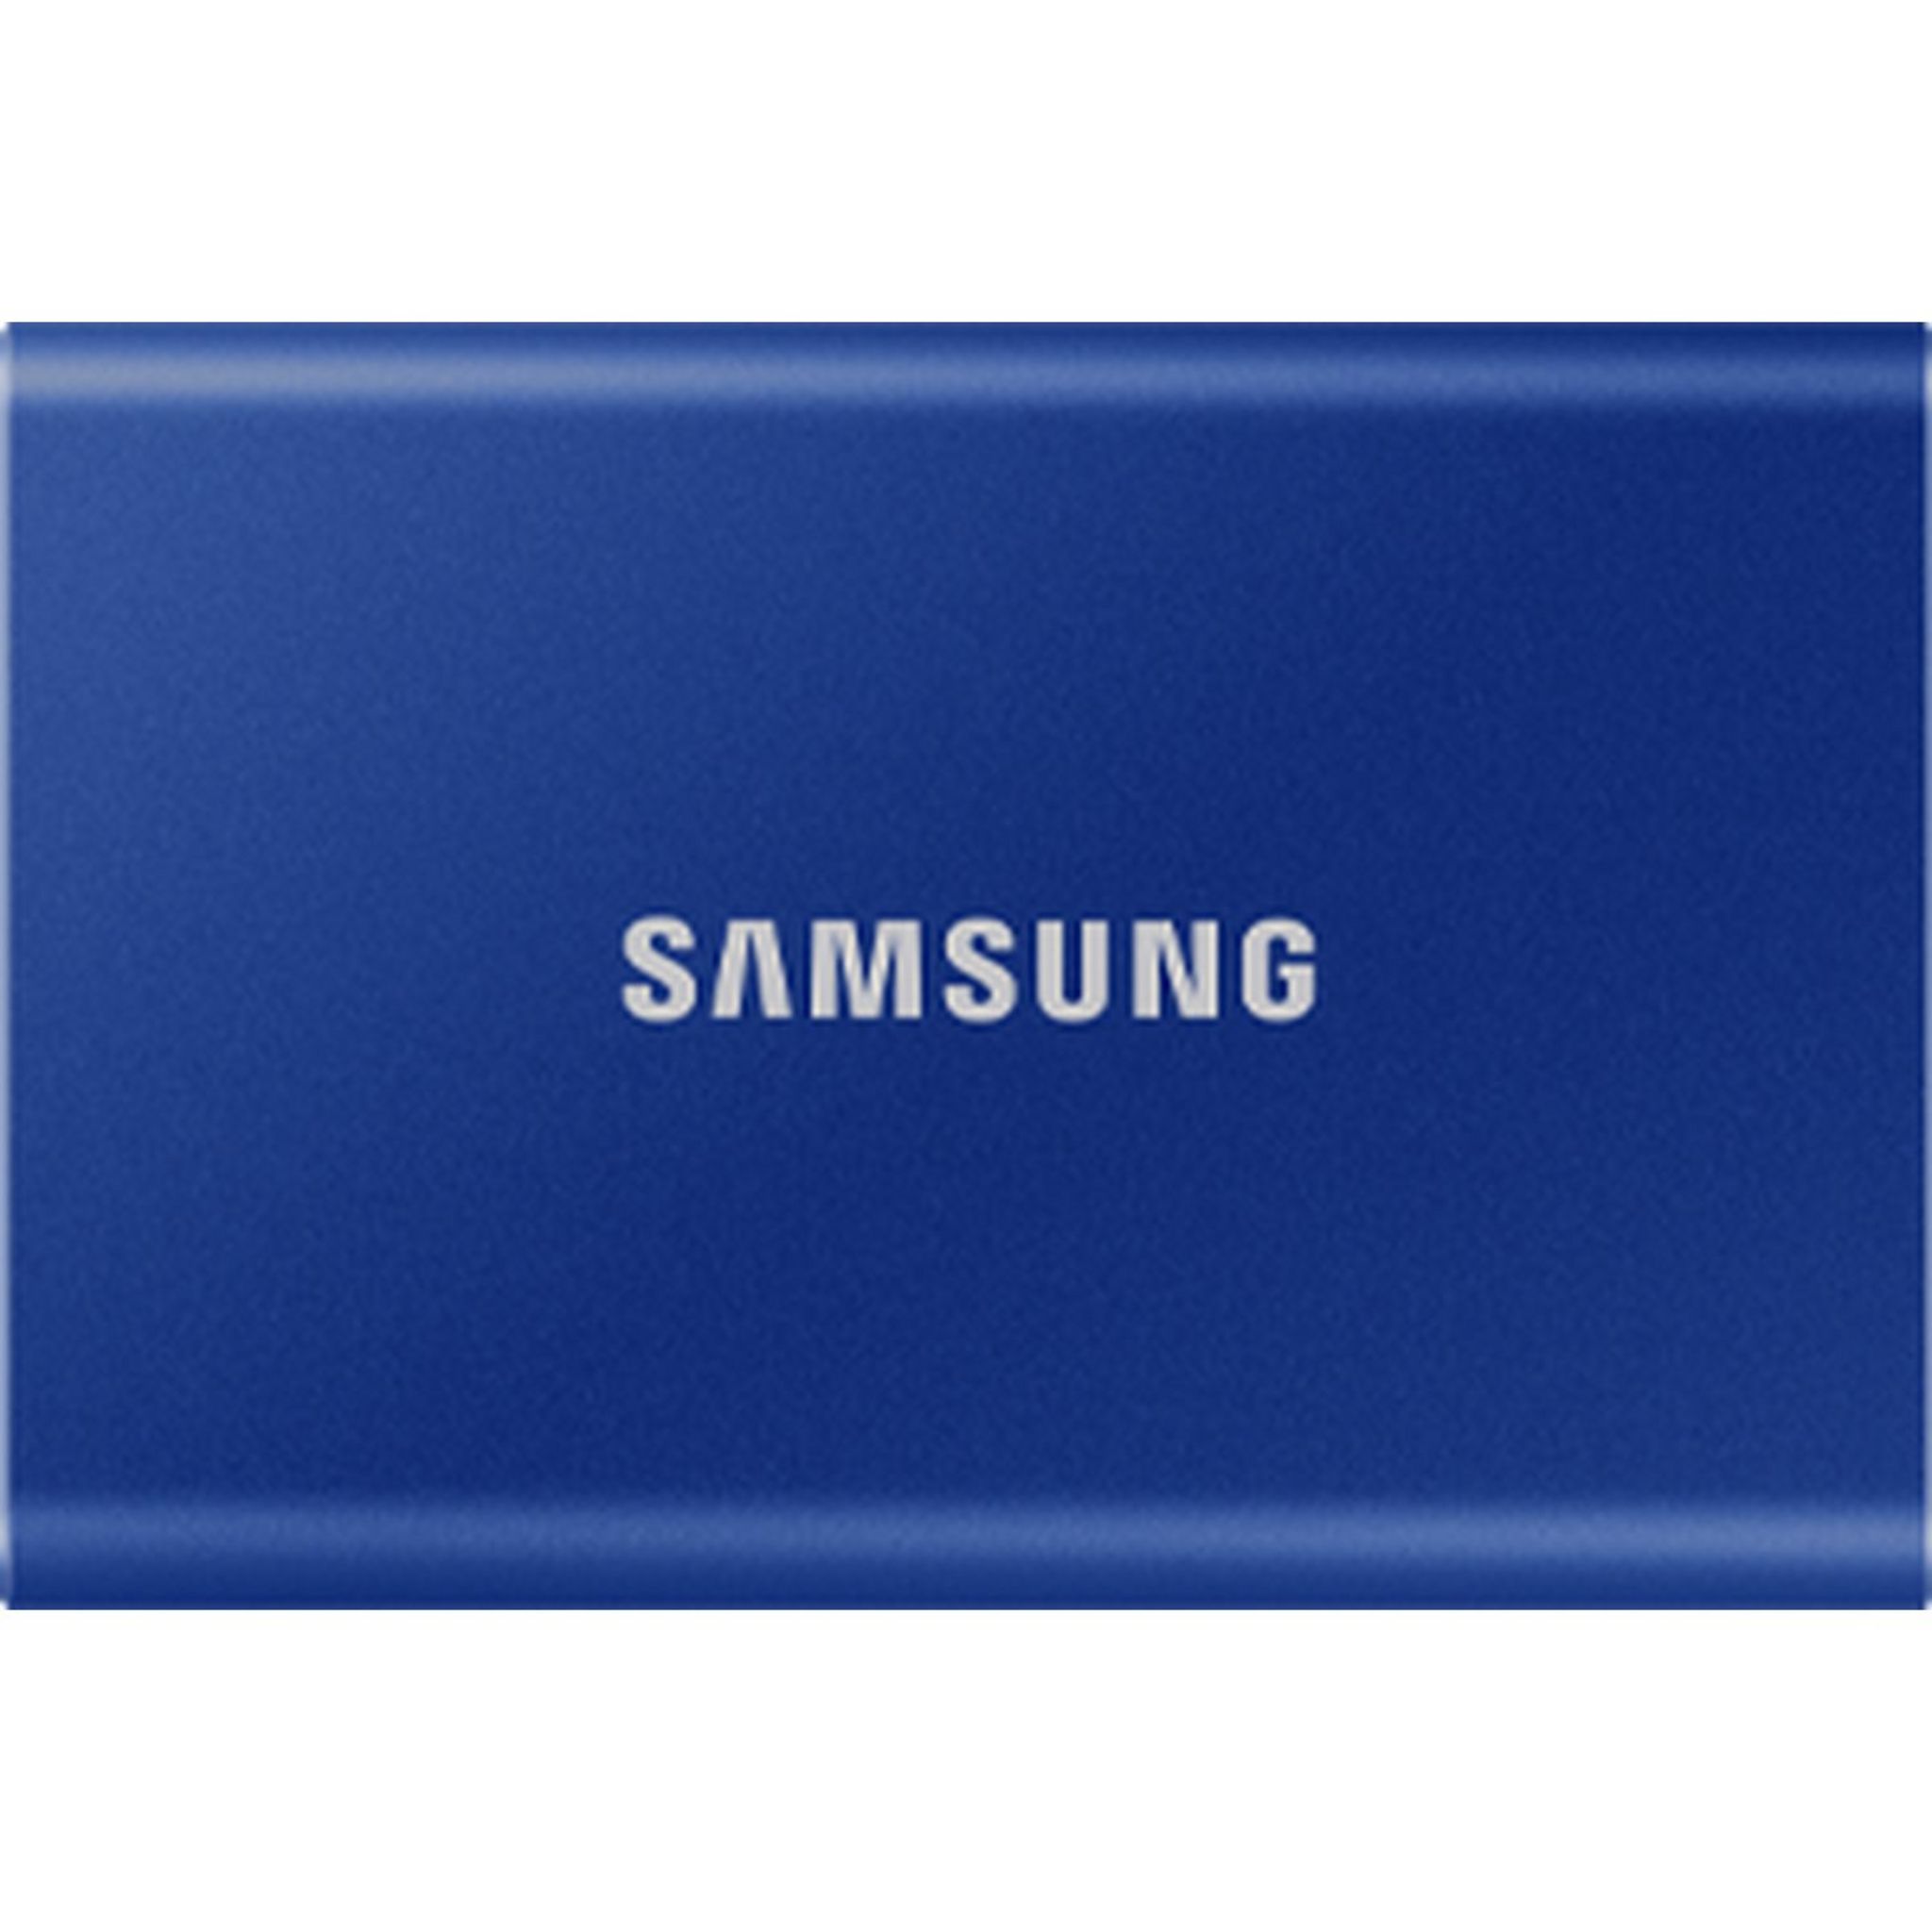 Samsung T7 Shield Beige - 2 To - Disque dur externe Samsung sur